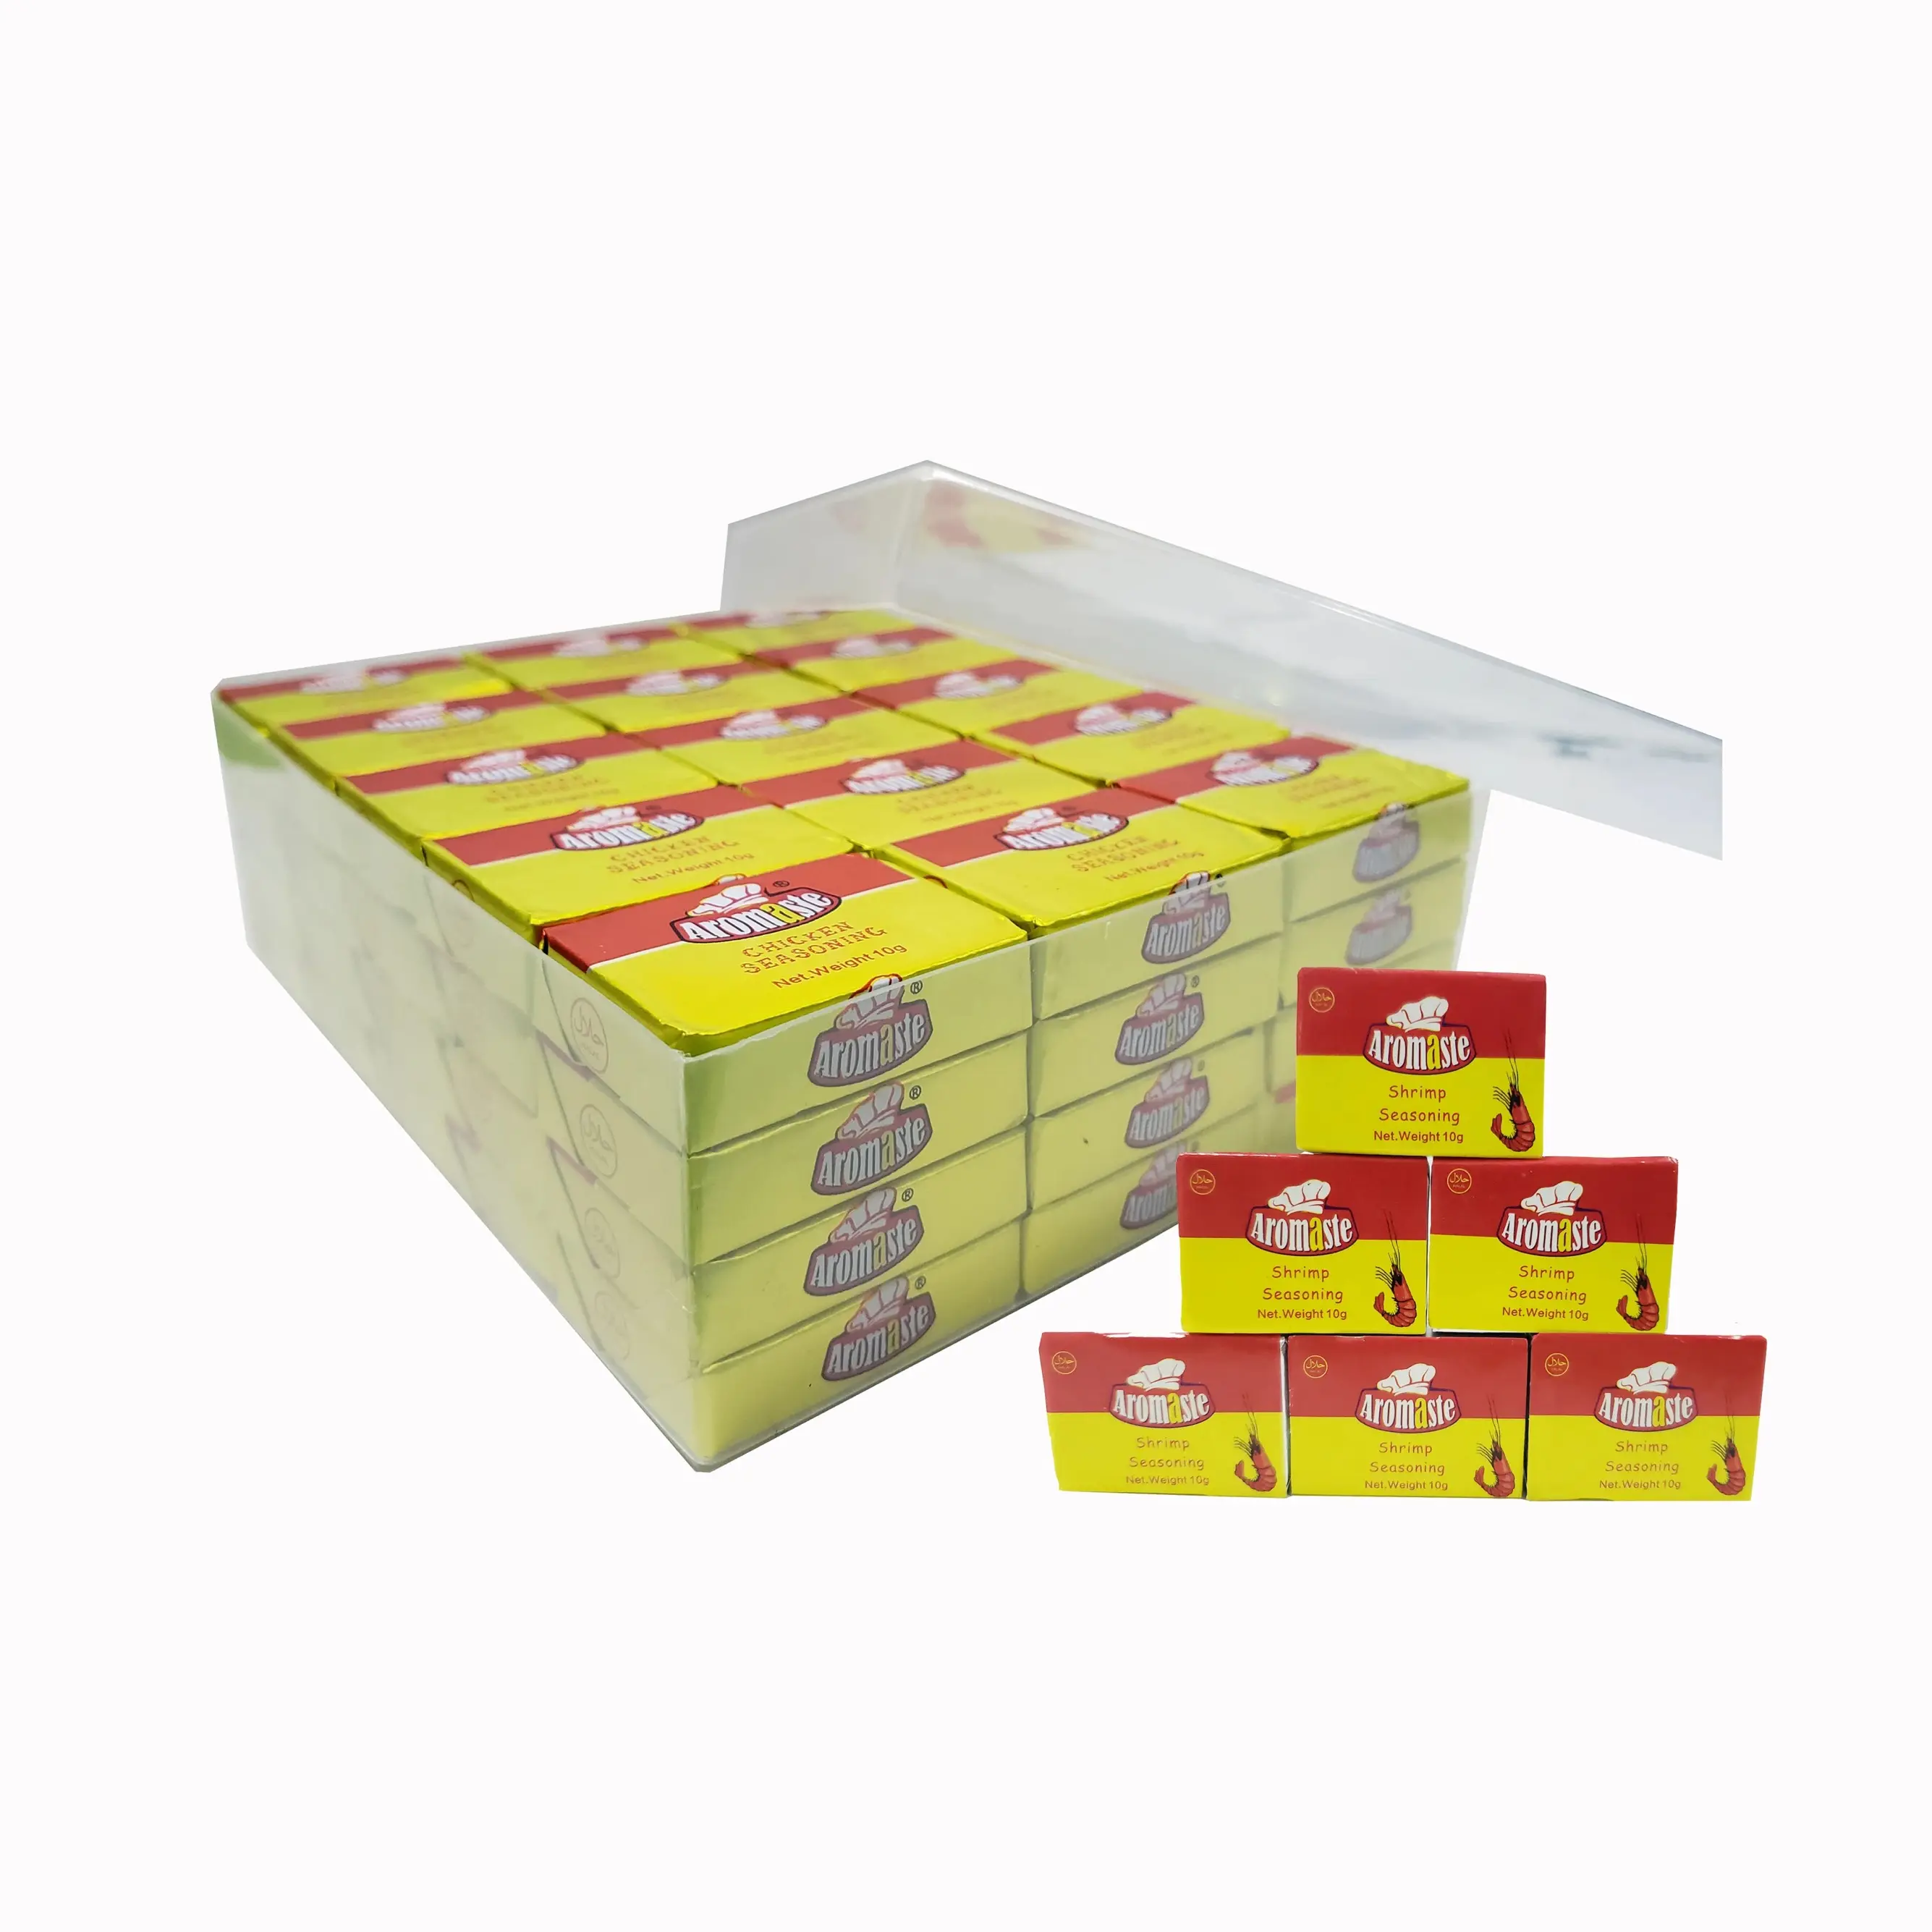 Maggie Cube Со вкусом креветок, популярный в Западной Африке кубик для приправ, 60 штук в упаковке/коробке по заводской цене